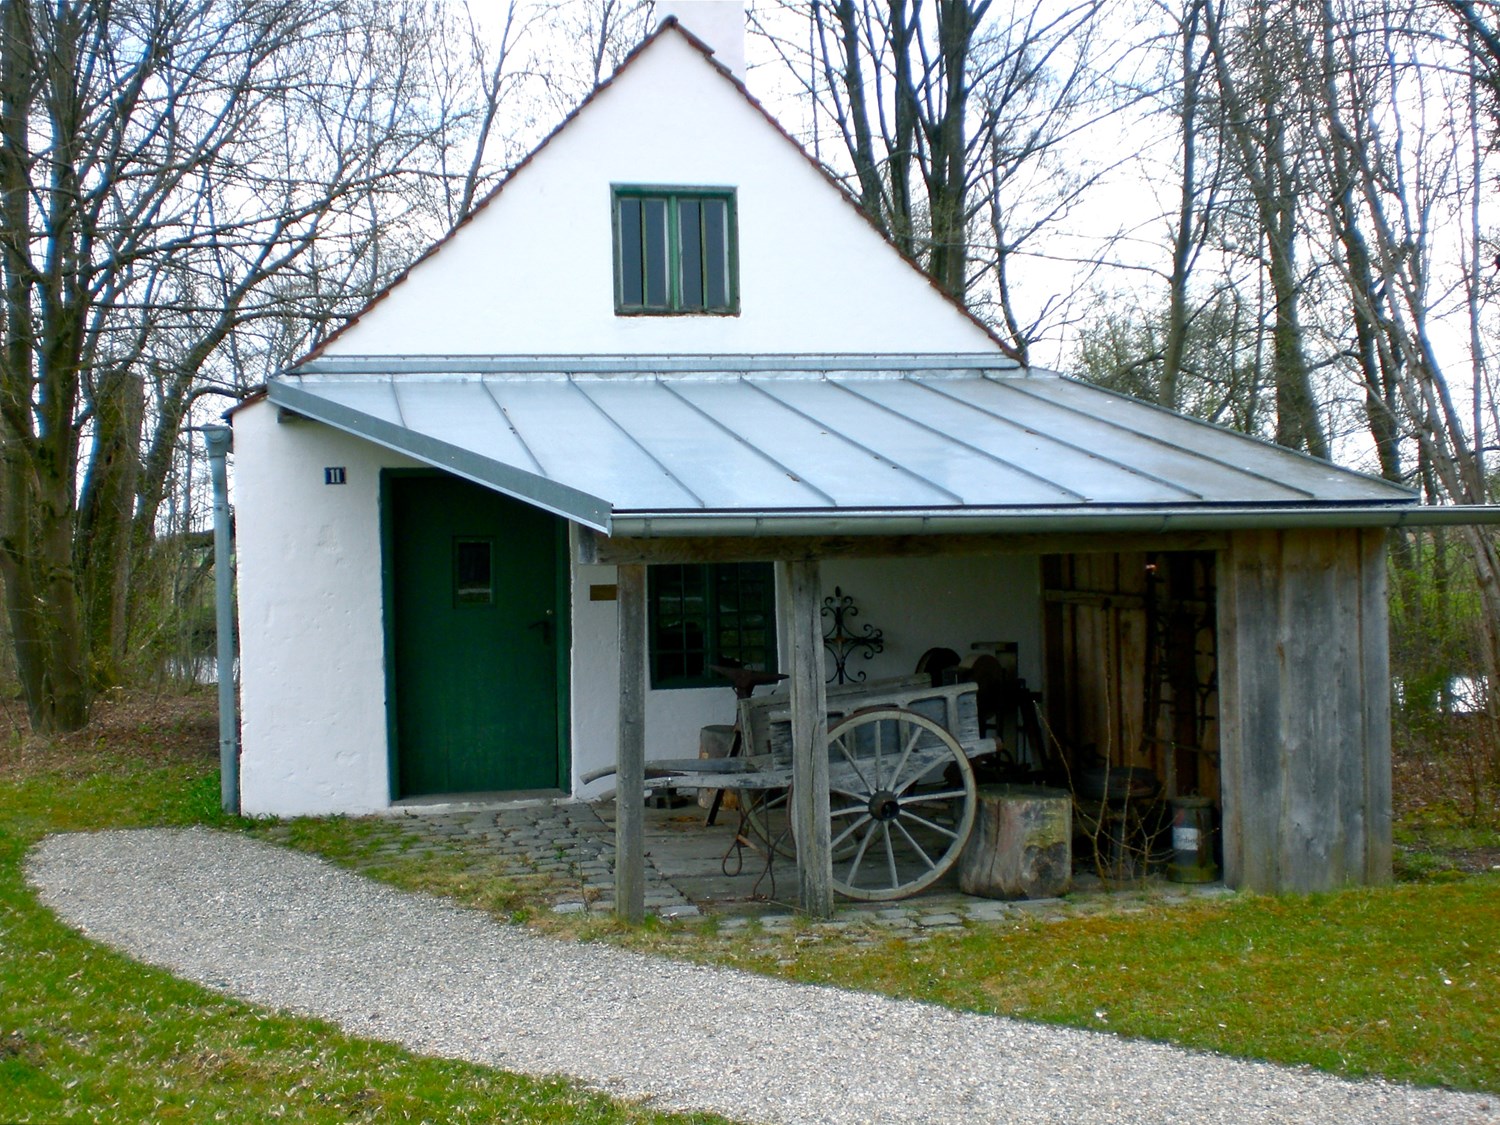 Die Schmiede aus Dorfen war eine Huf- und Nagelschmiede. Sie wurde 1833 erbaut und blieb bis 1969 in Betrieb. 1986 beschloss der Landkreis Erding die Schmiede in das geplante Bauernhausmuseum zu übernehmen. Am 29. Juni 1991 wurde sie der Öffentlichkeit übergeben.